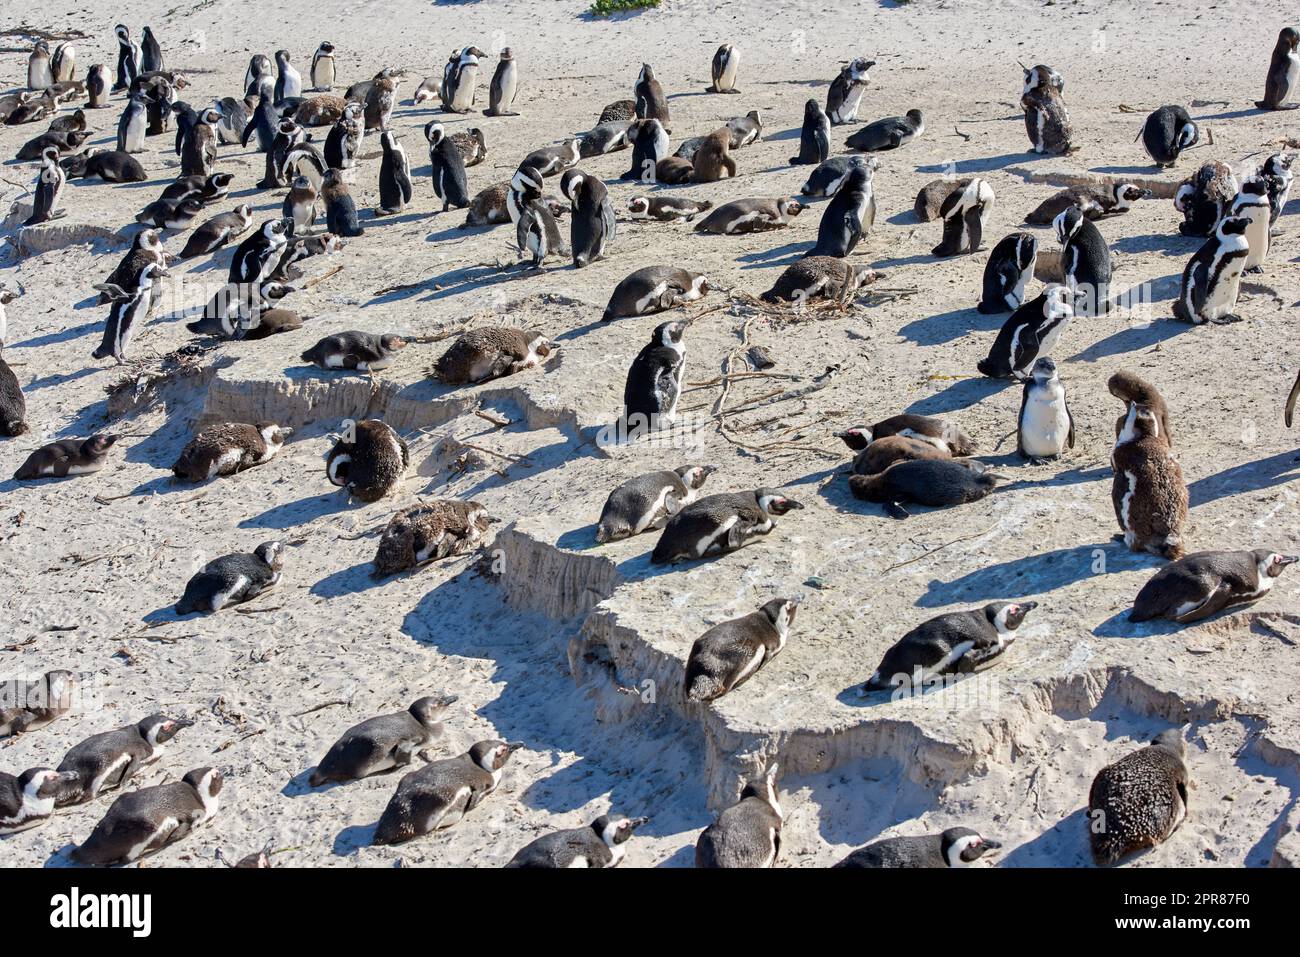 Colonie de pingouins africains à pieds noirs sur la côte de reproduction de Boulders Beach et réserve de conservation en Afrique du Sud. Groupe d'oiseaux aquatiques et d'espèces marines et marines protégées en danger pour le tourisme Banque D'Images